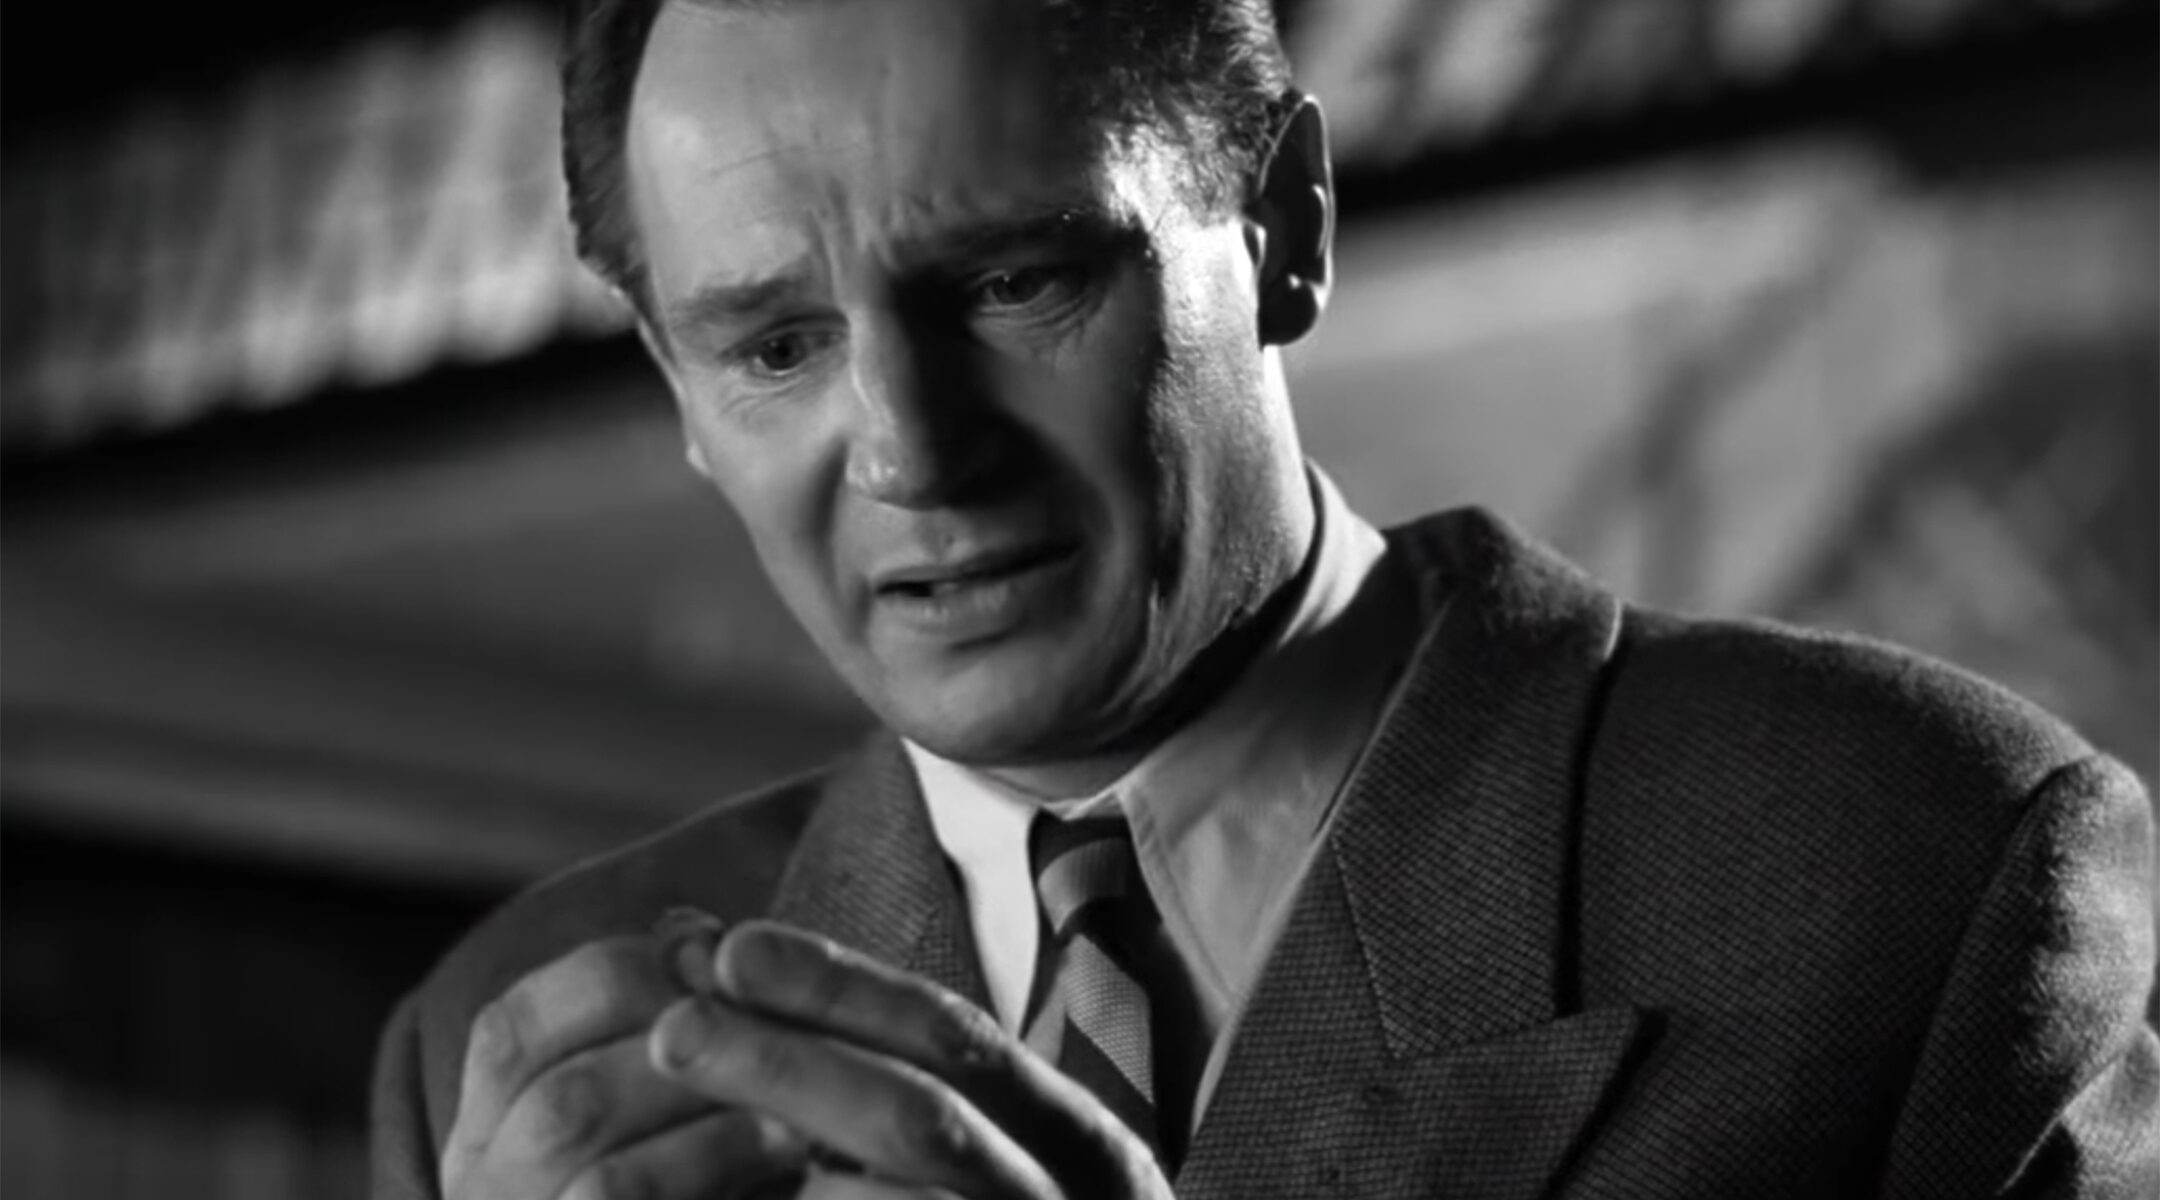 Liam Neeson in "Schindler's List"